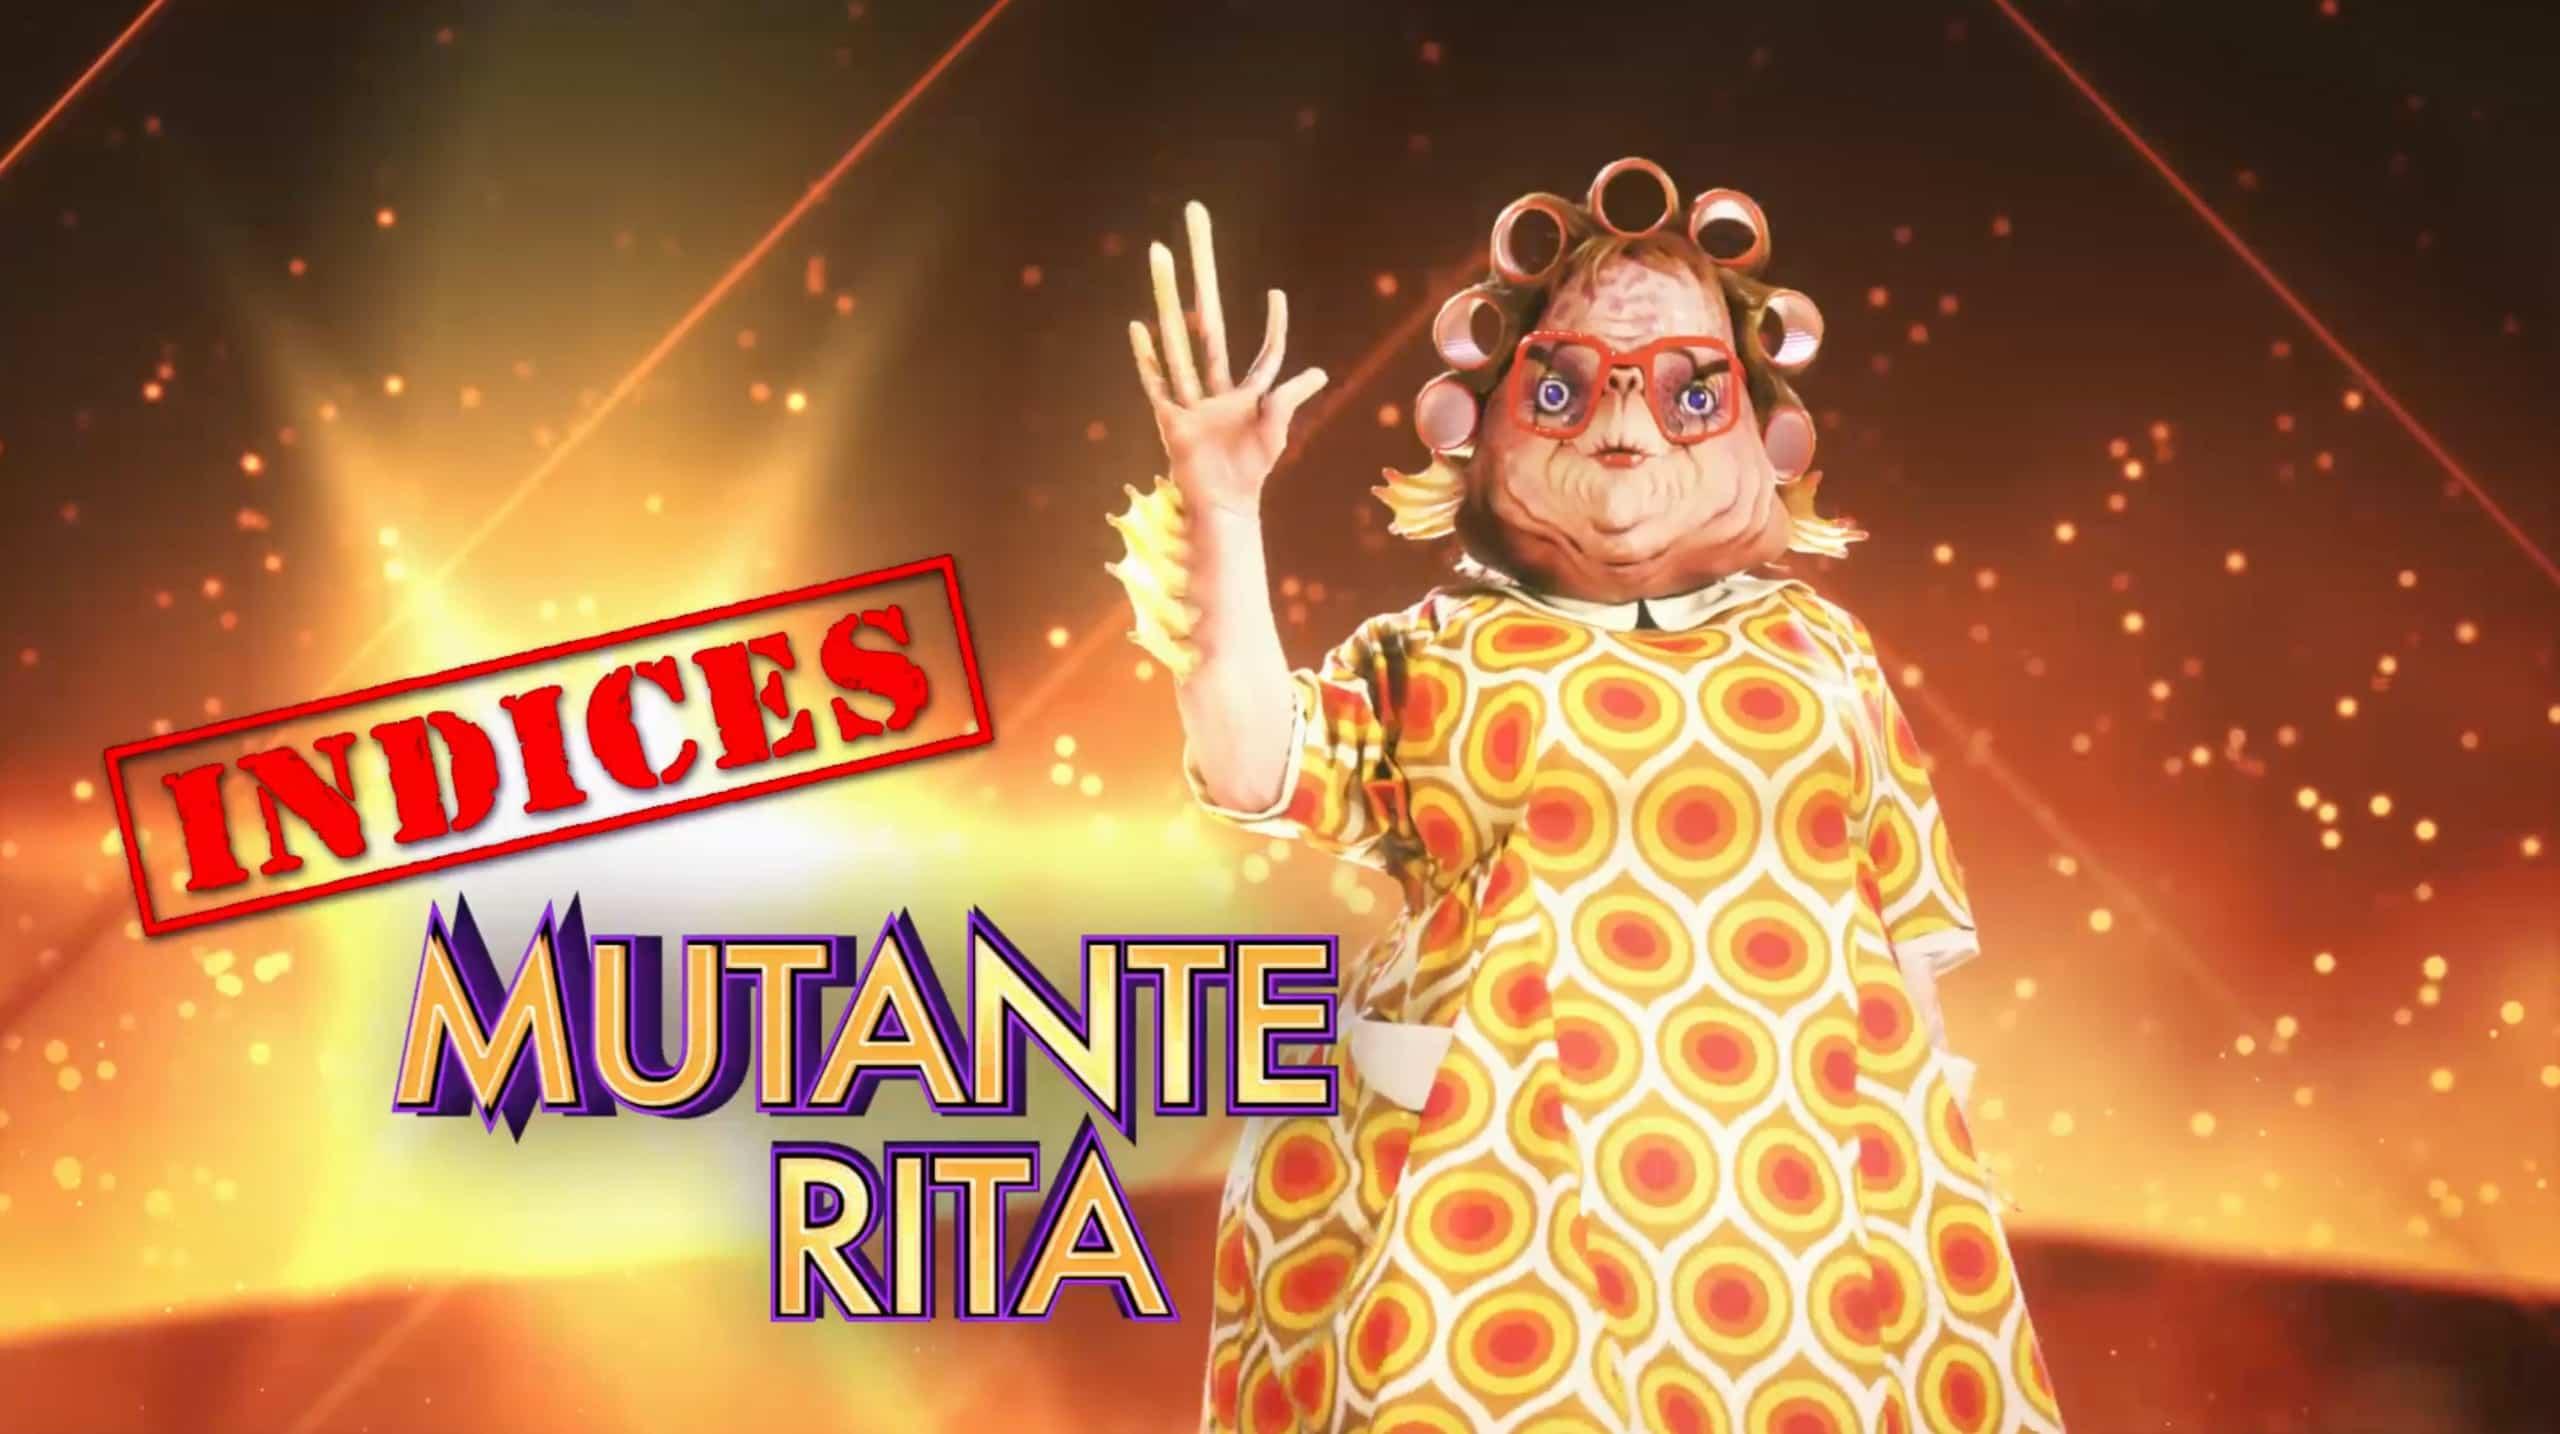 Mutante Rita - Indices 2